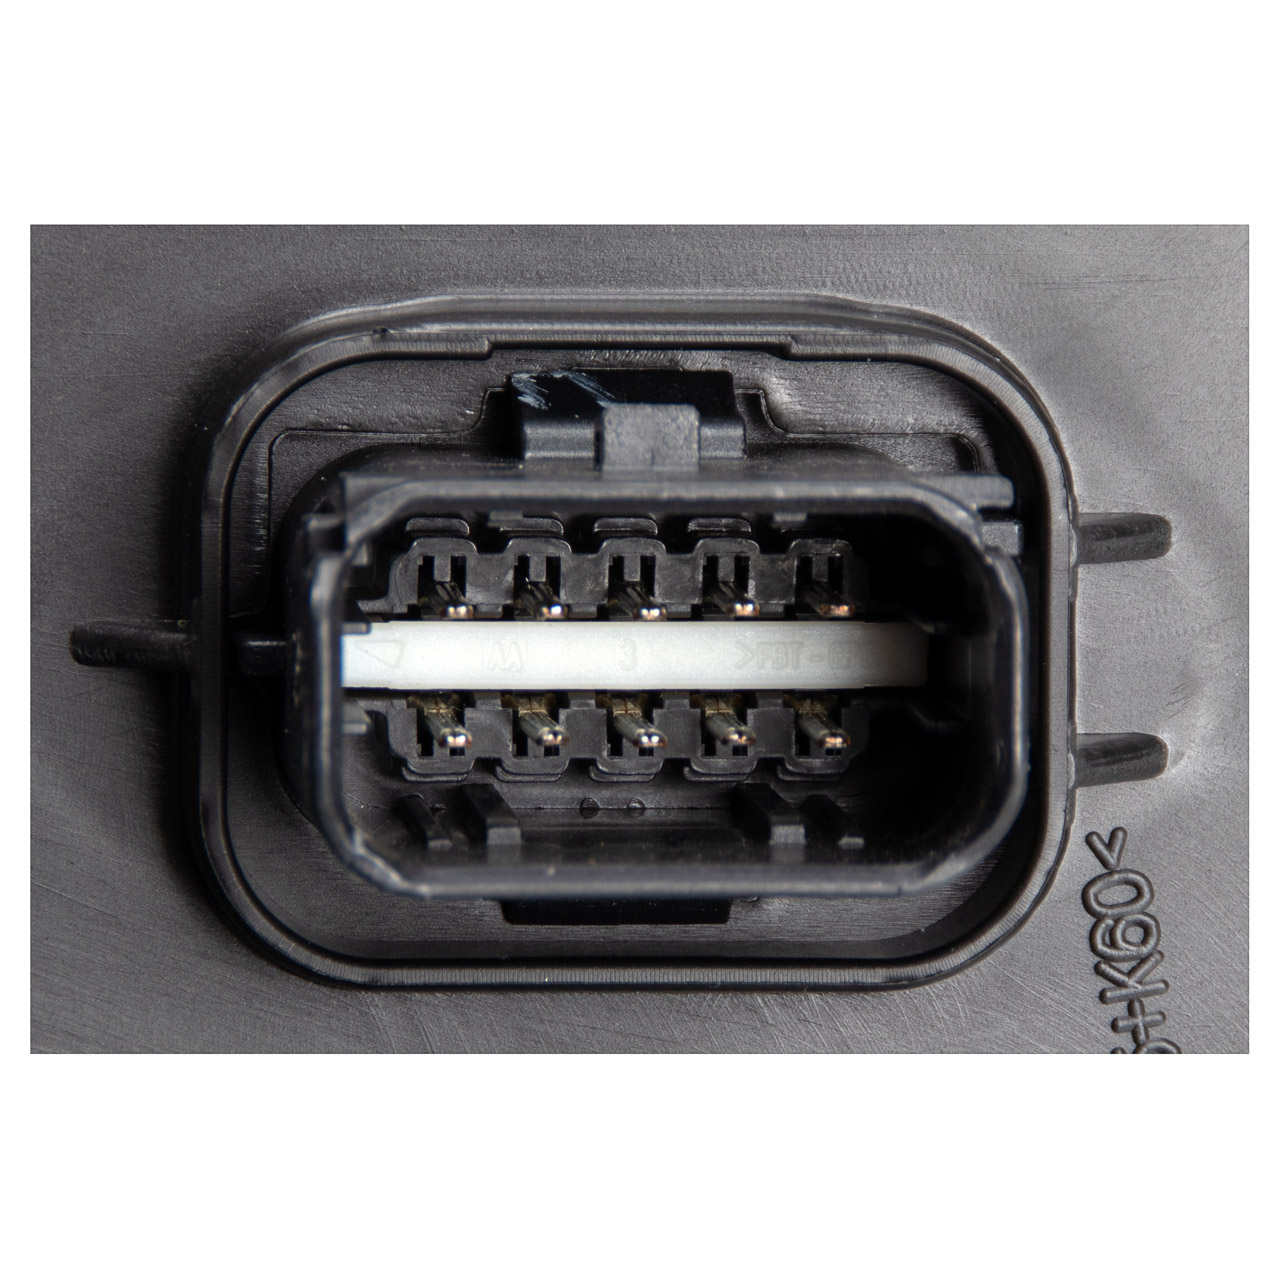 ORIGINAL Citroen LED Scheinwerfer C4 2 DS4 / Crossback vorne links 9808623880